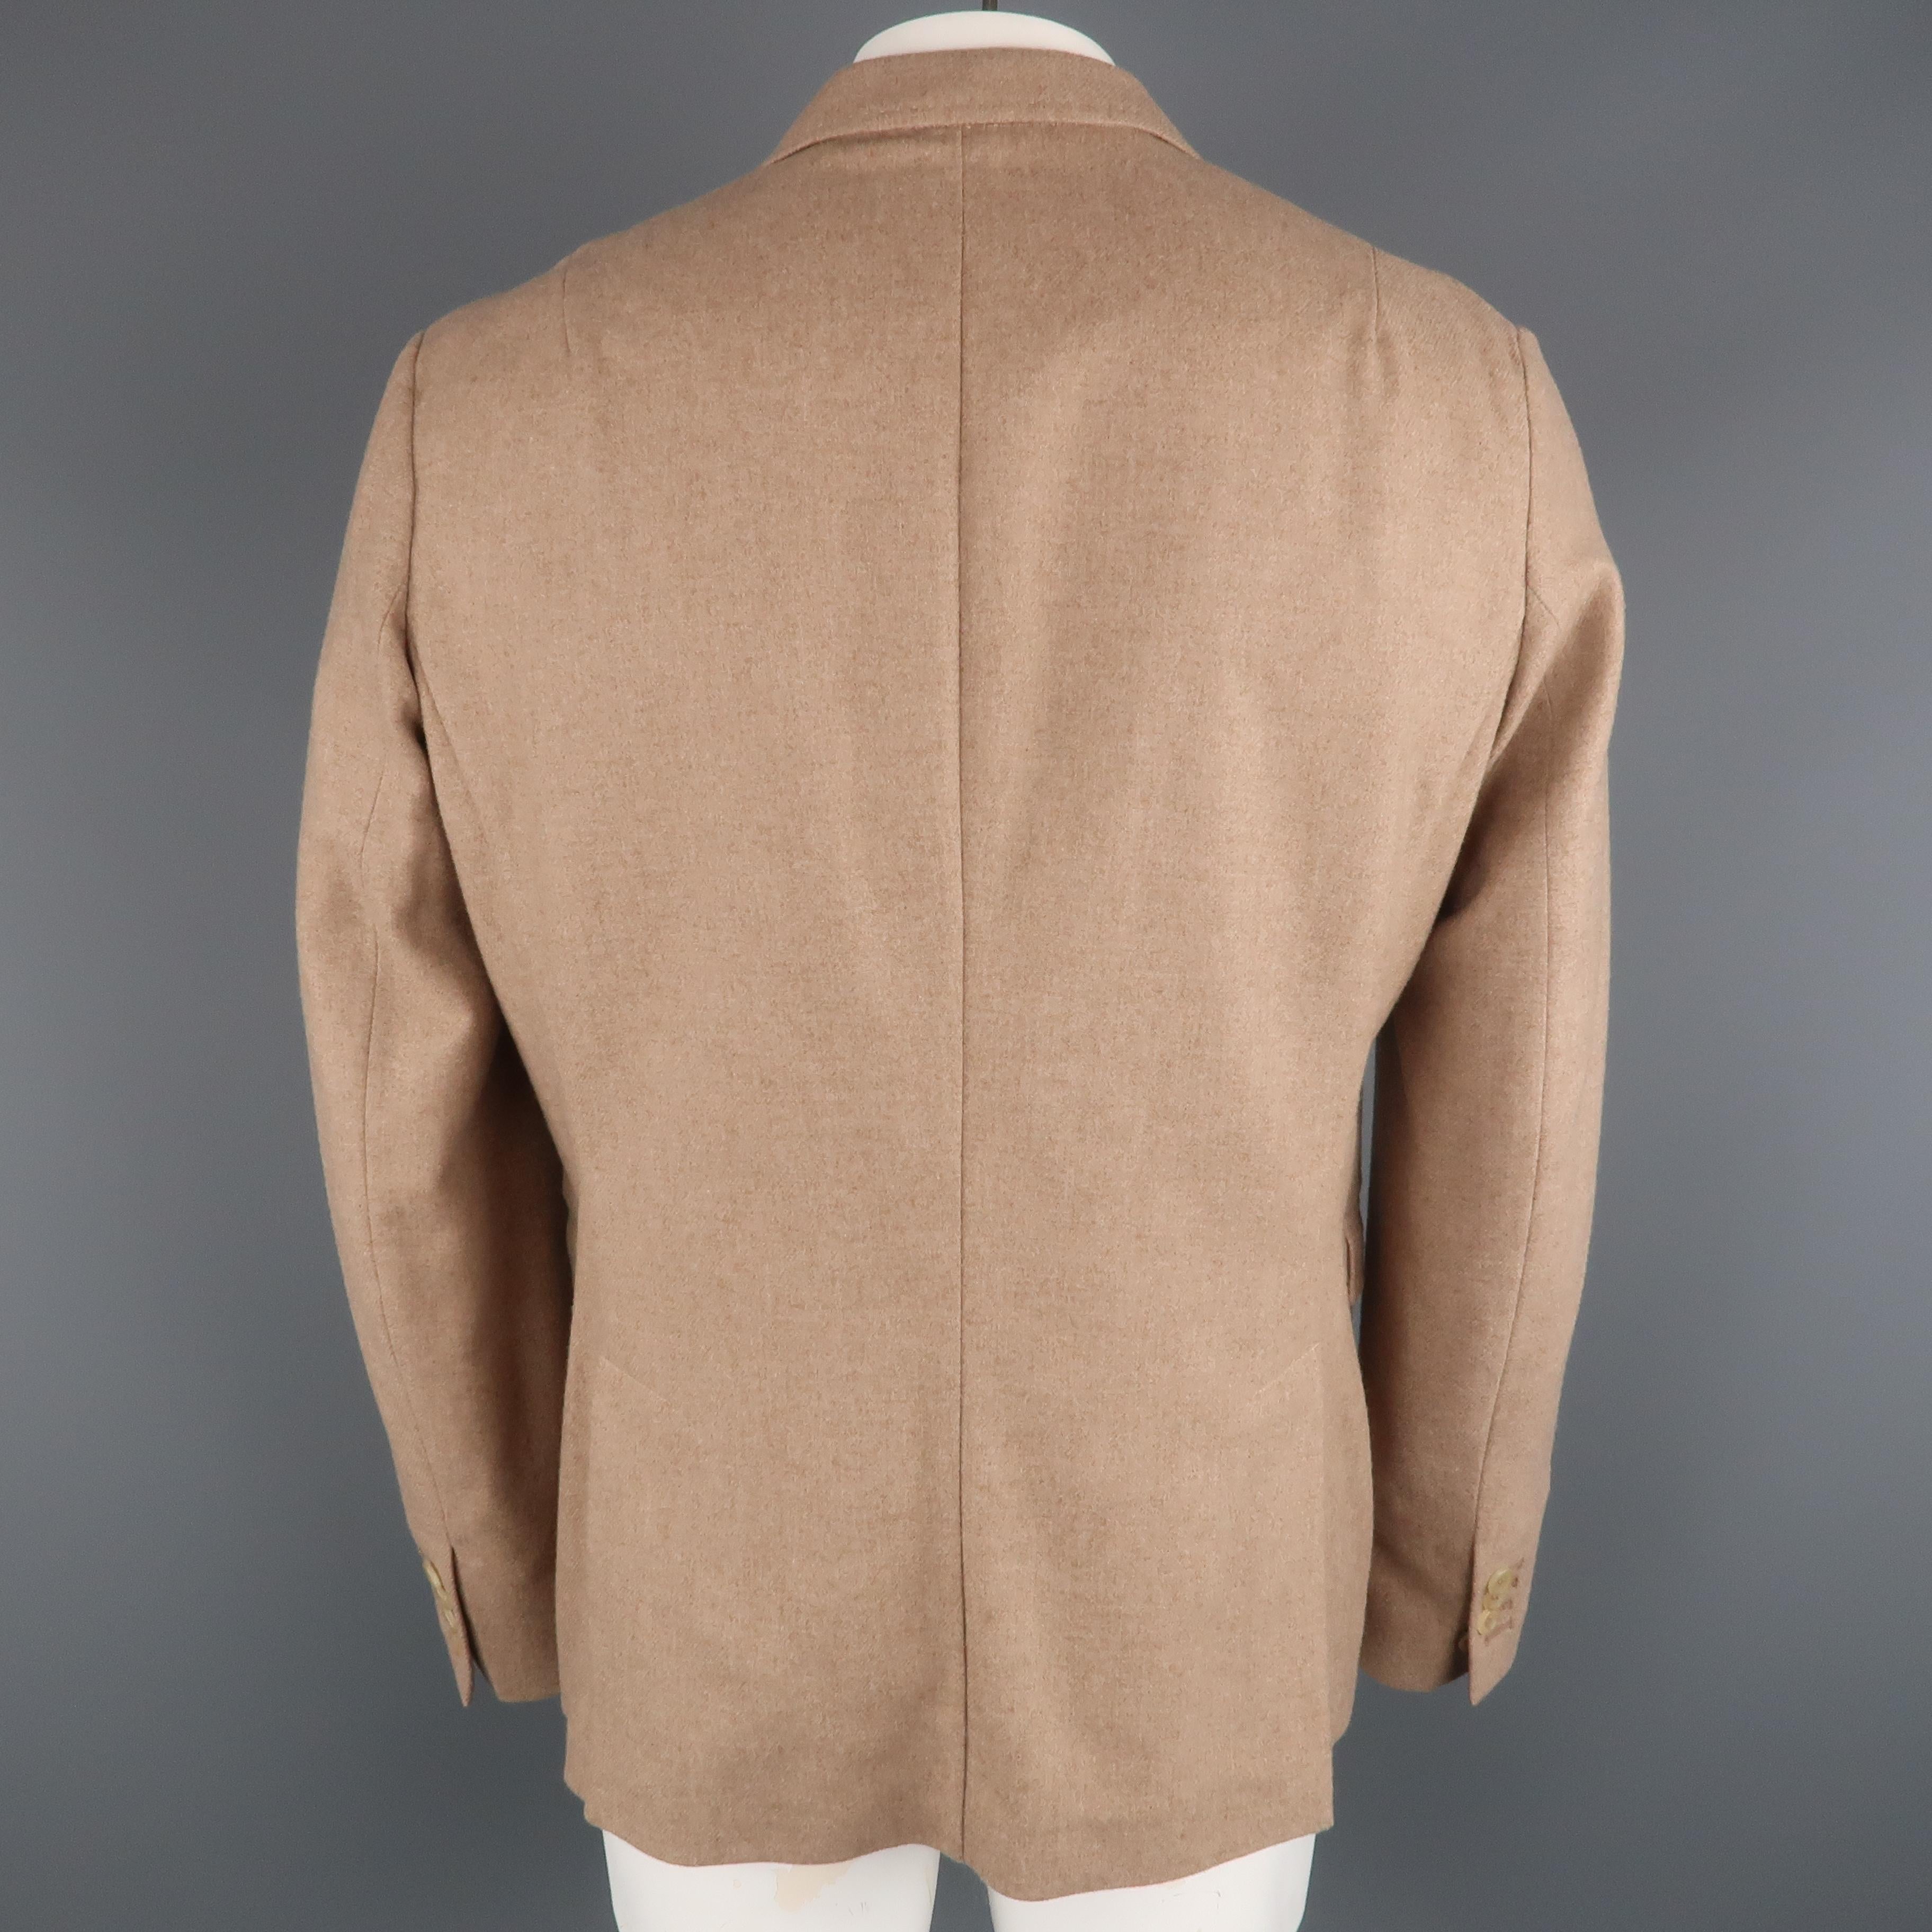 light brown sport coat